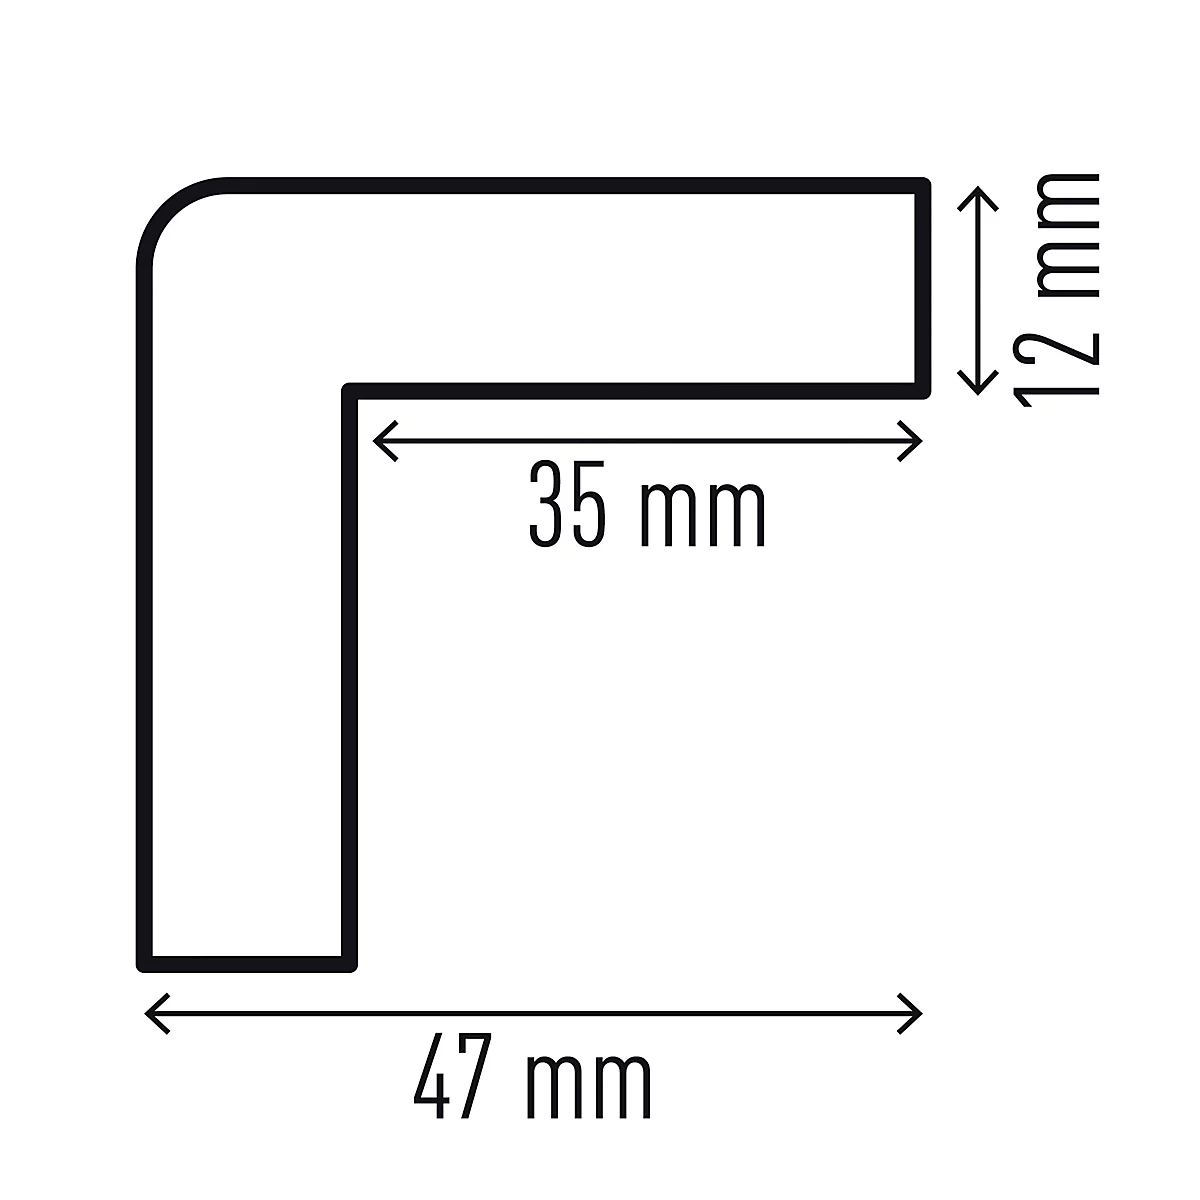 Eckschutzprofil Durable C35, rechteckig, für Innen- & Außenbereich, Klebefläche je Seite 35 mm, L 1000 x B 47 mm, PU-Schaum, gelb/schwarz